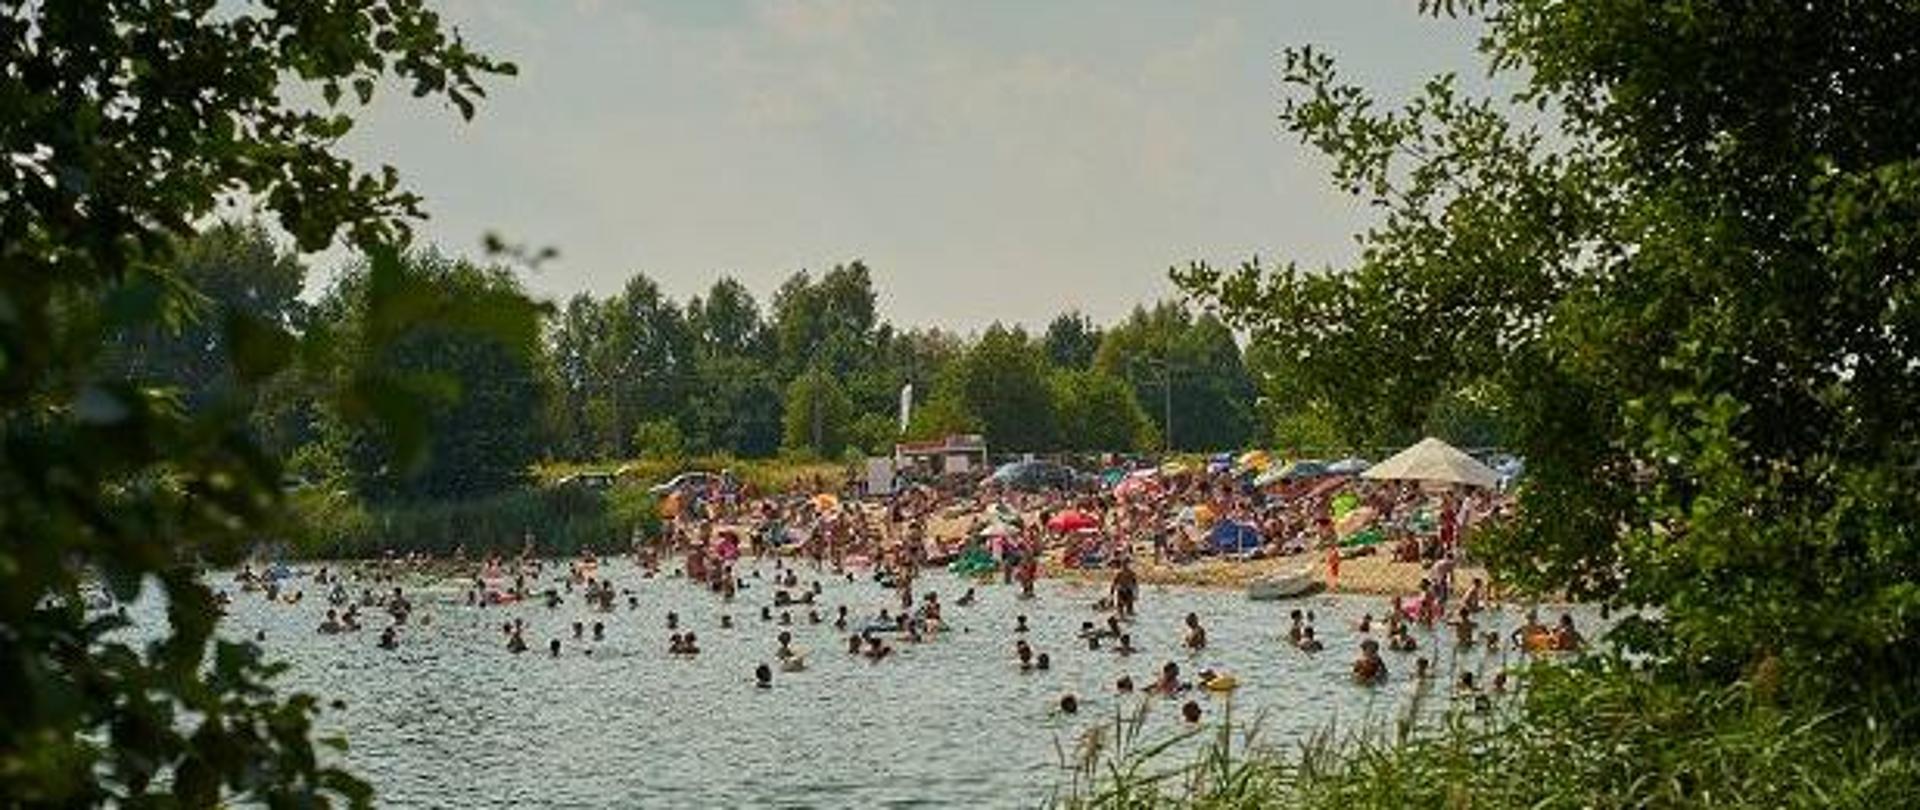 Ludzie kąpiący się nad jeziorem. Osoby w wodzie i na plaży. Widoczne parasole, materace, samochody. Wszystko otoczone roślinnością.